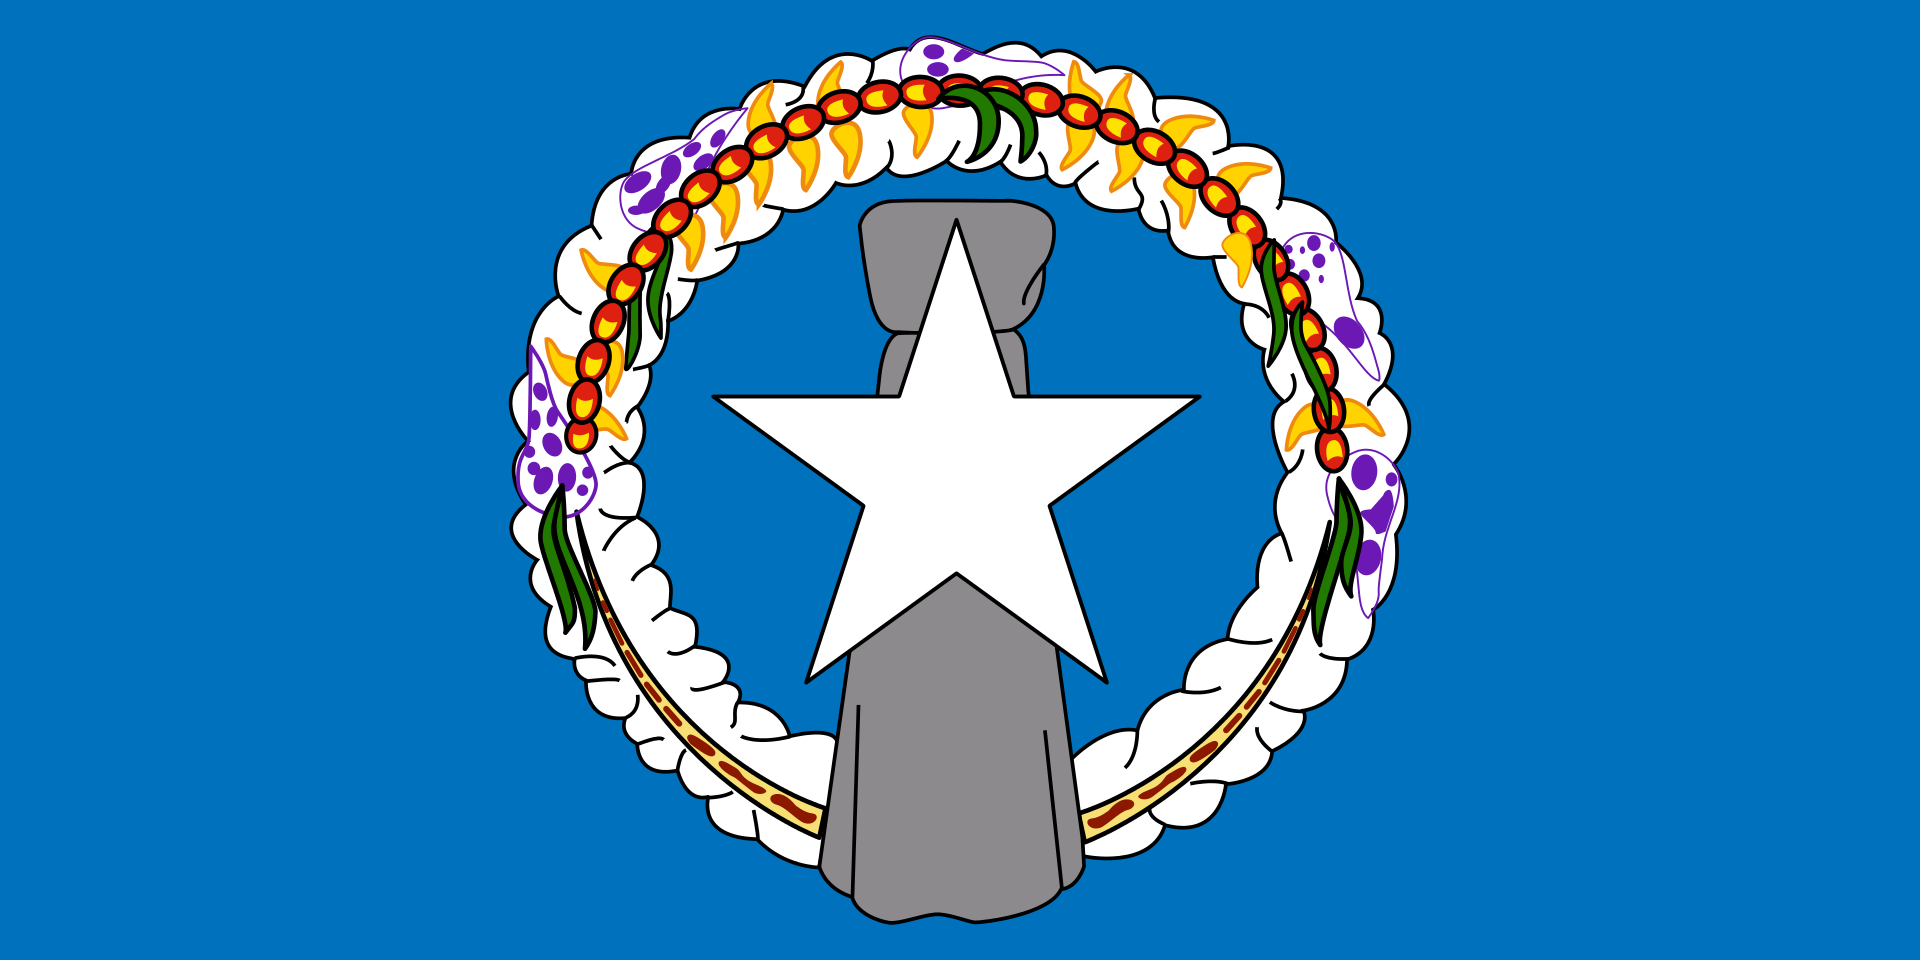 Mariana Islands